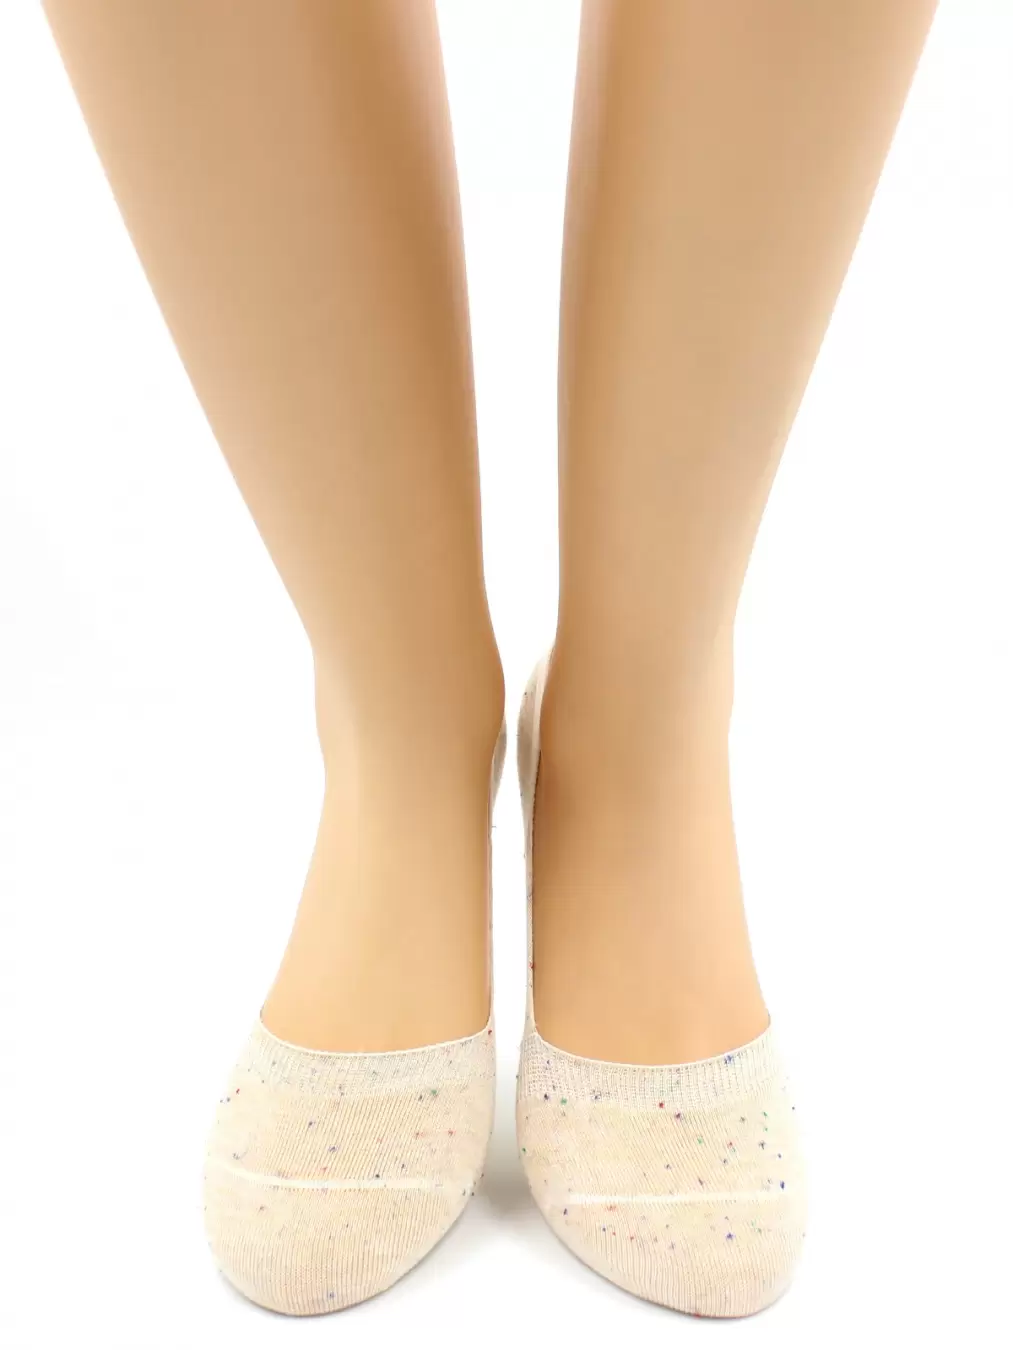 Hobby Line ННЖР1-2, носки женские невидимые (изображение 1)